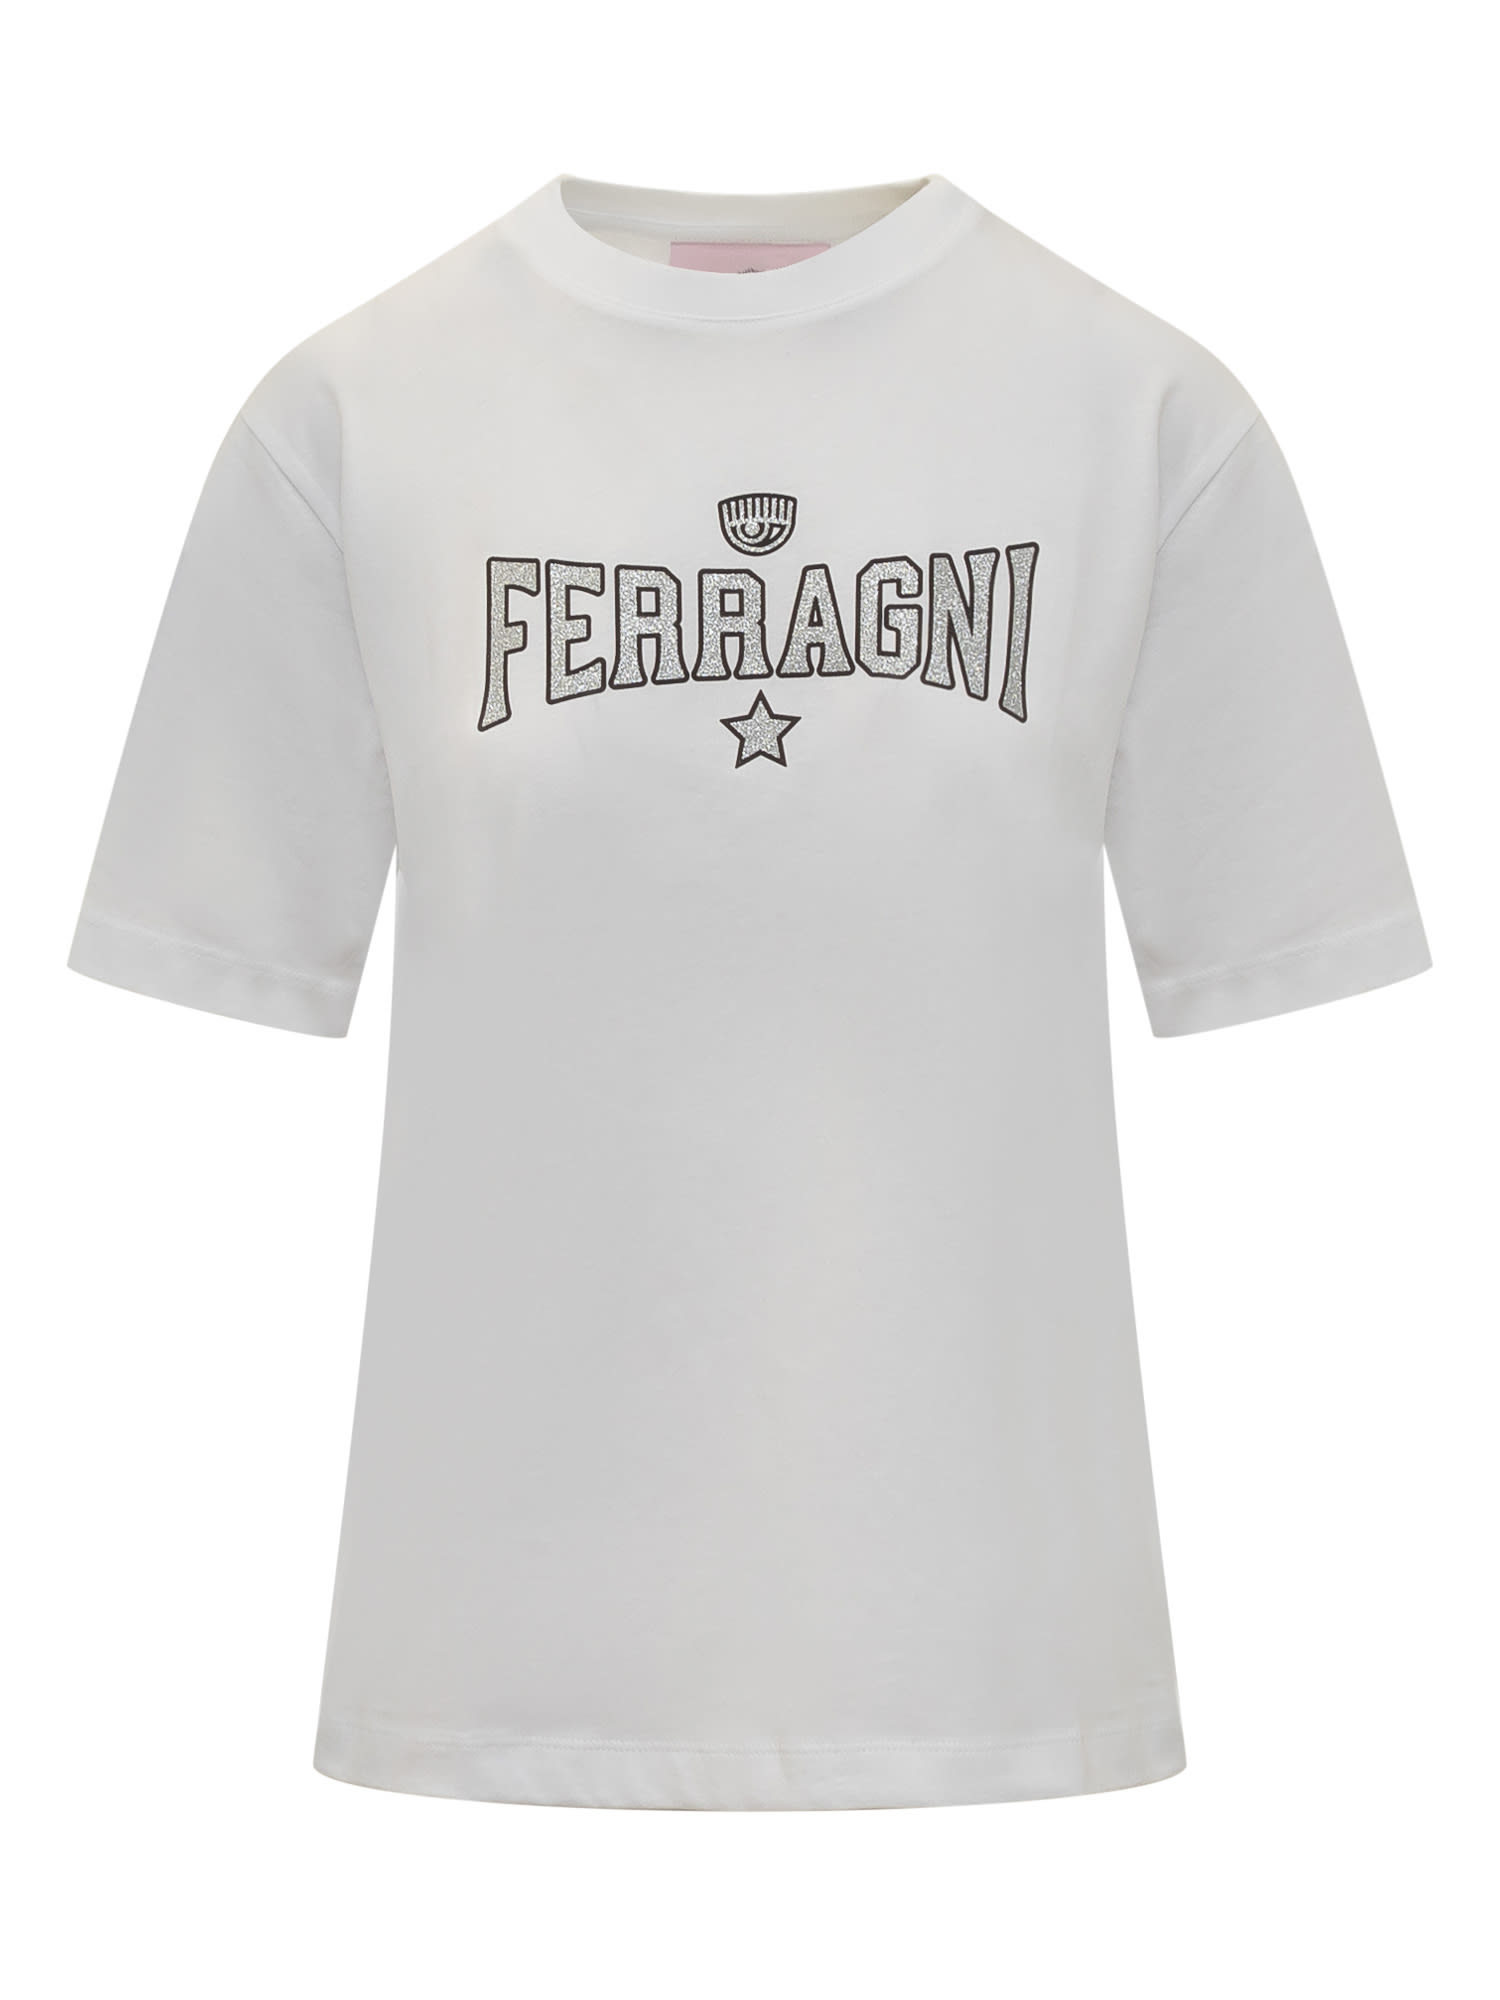 Ferragni 610 T-shirt